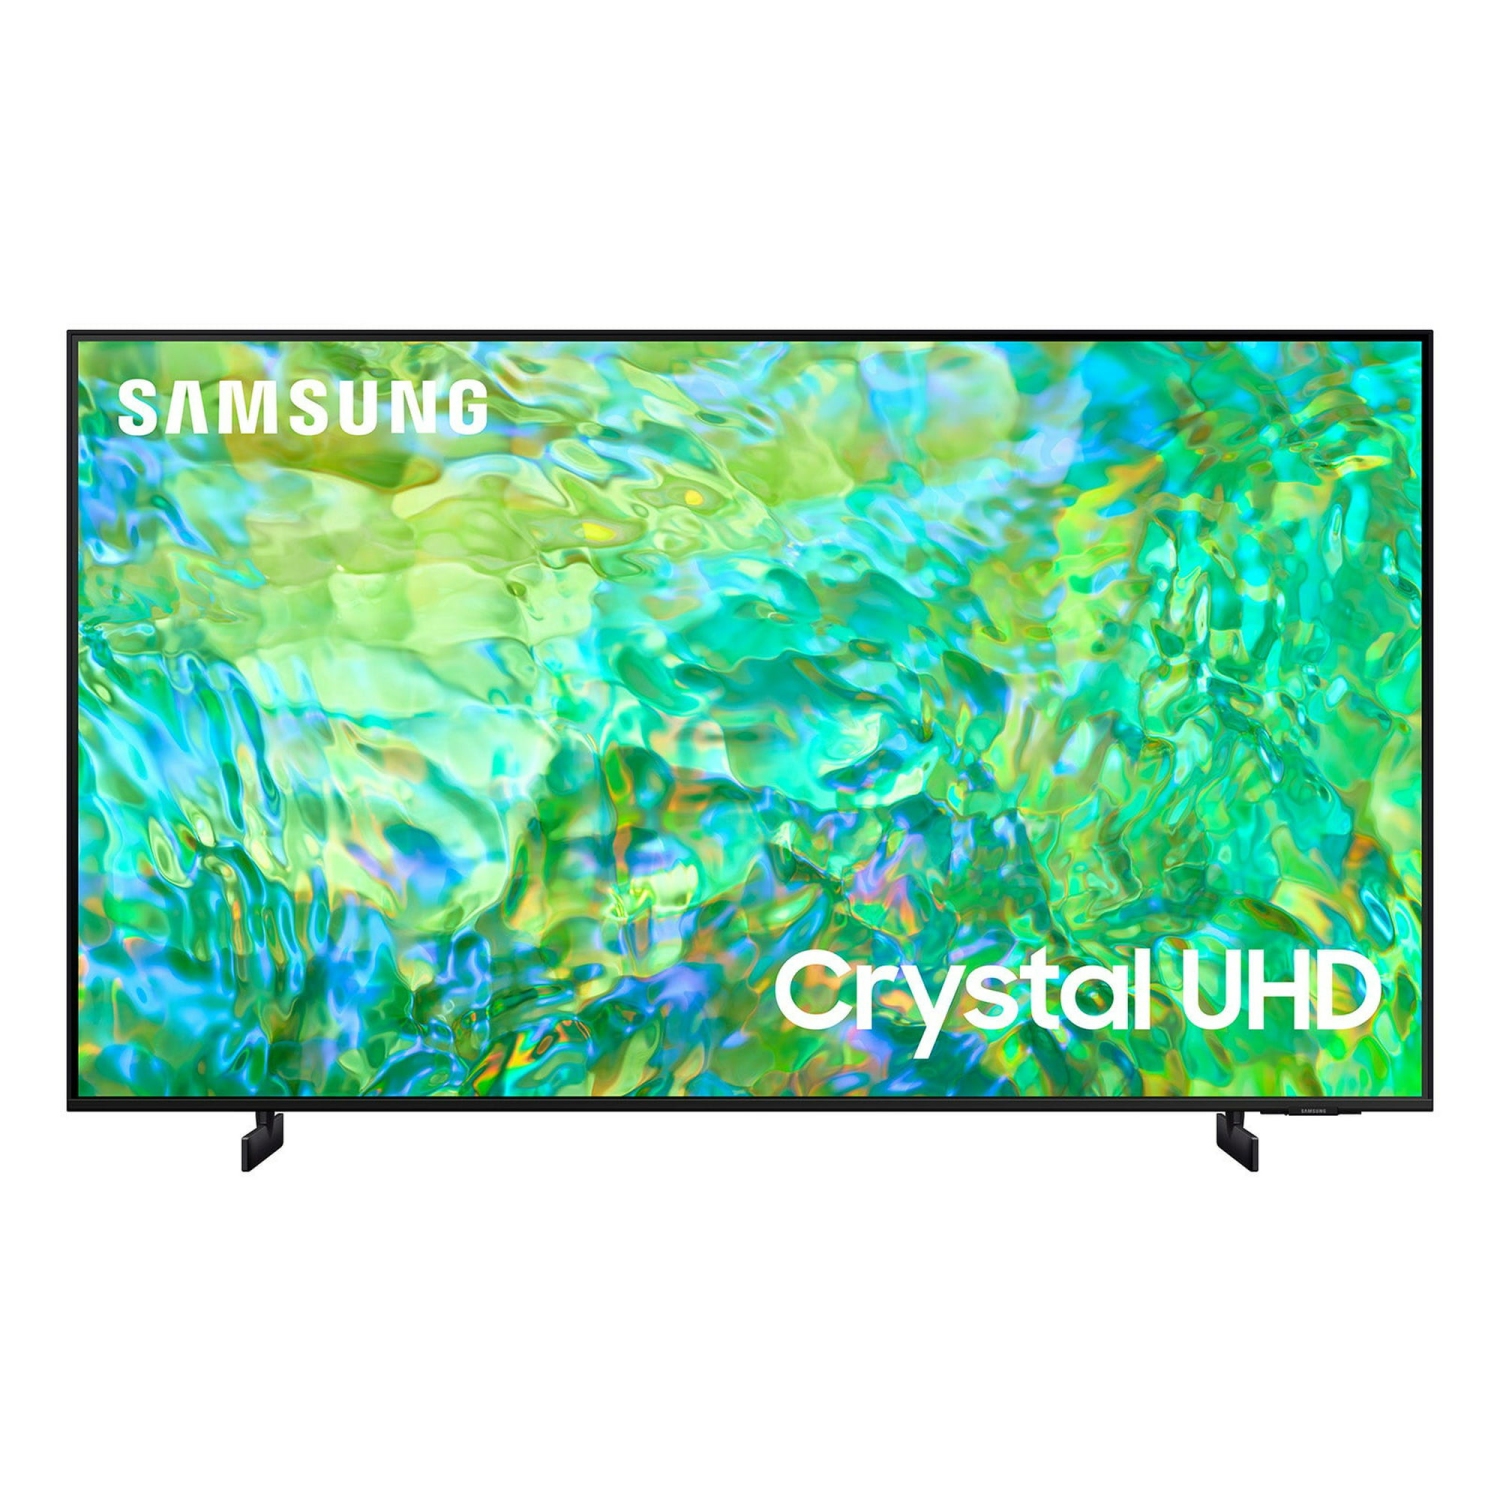 REFURBISHED (GOOD) - SAMSUNG 65" Class CU8000B Crystal UHD 4K Smart TV (UN65CU8000B)